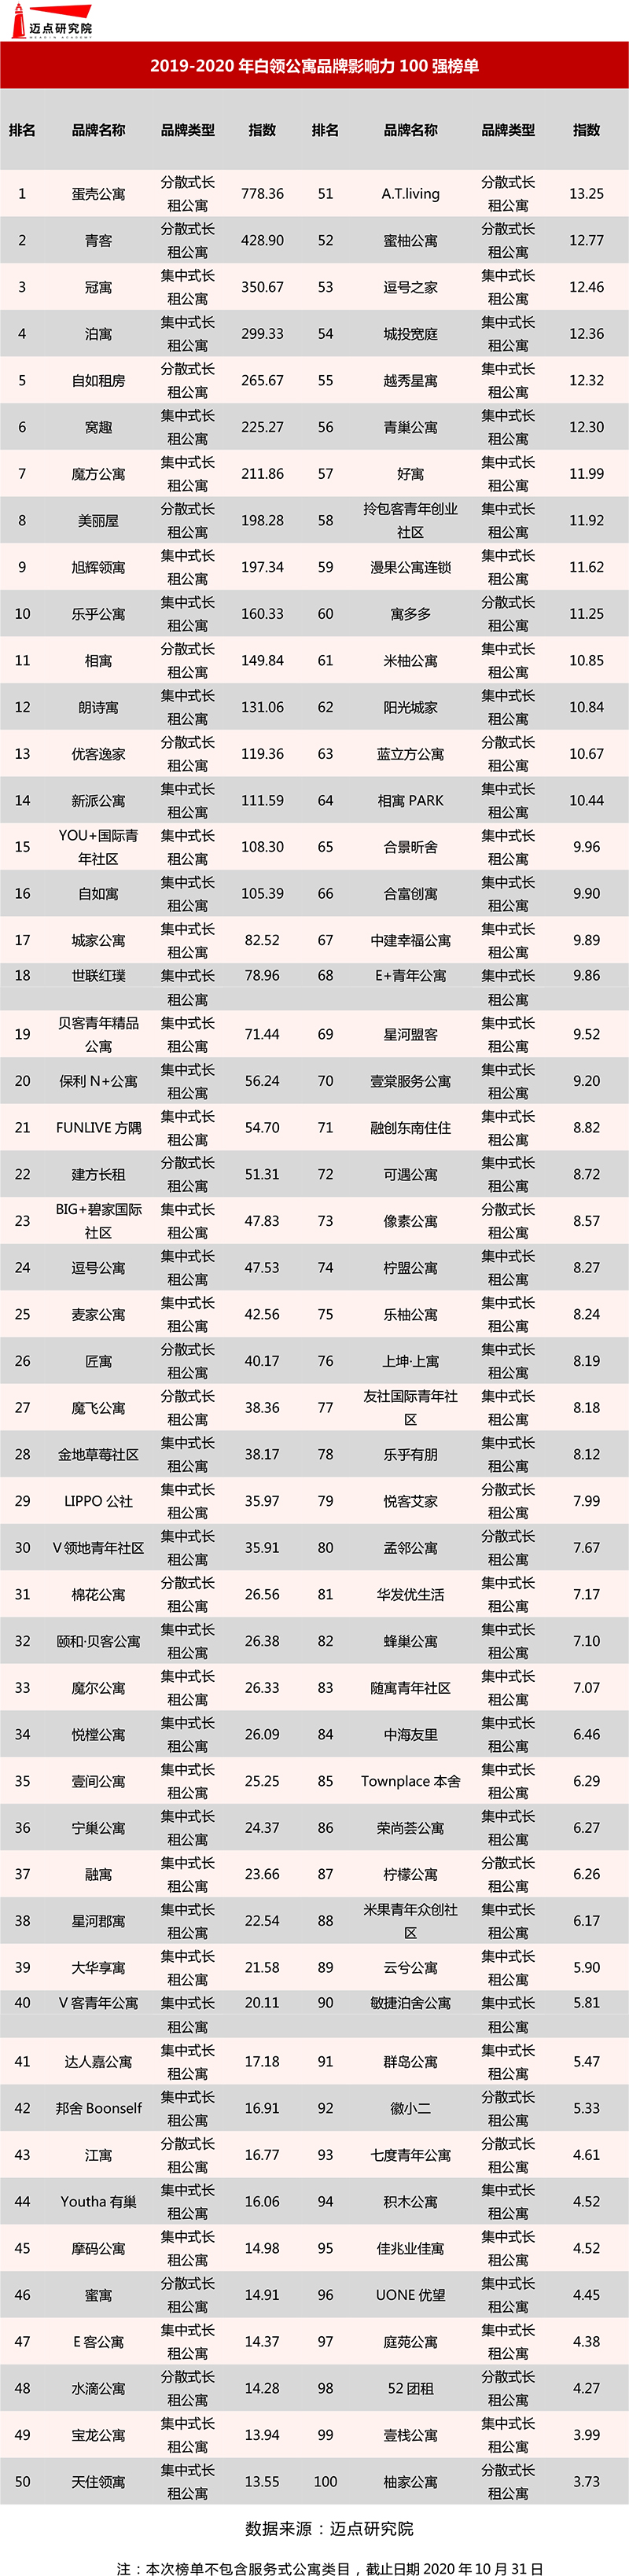 2019-2020年白领公寓品牌影响力100强榜单(初版）.jpg